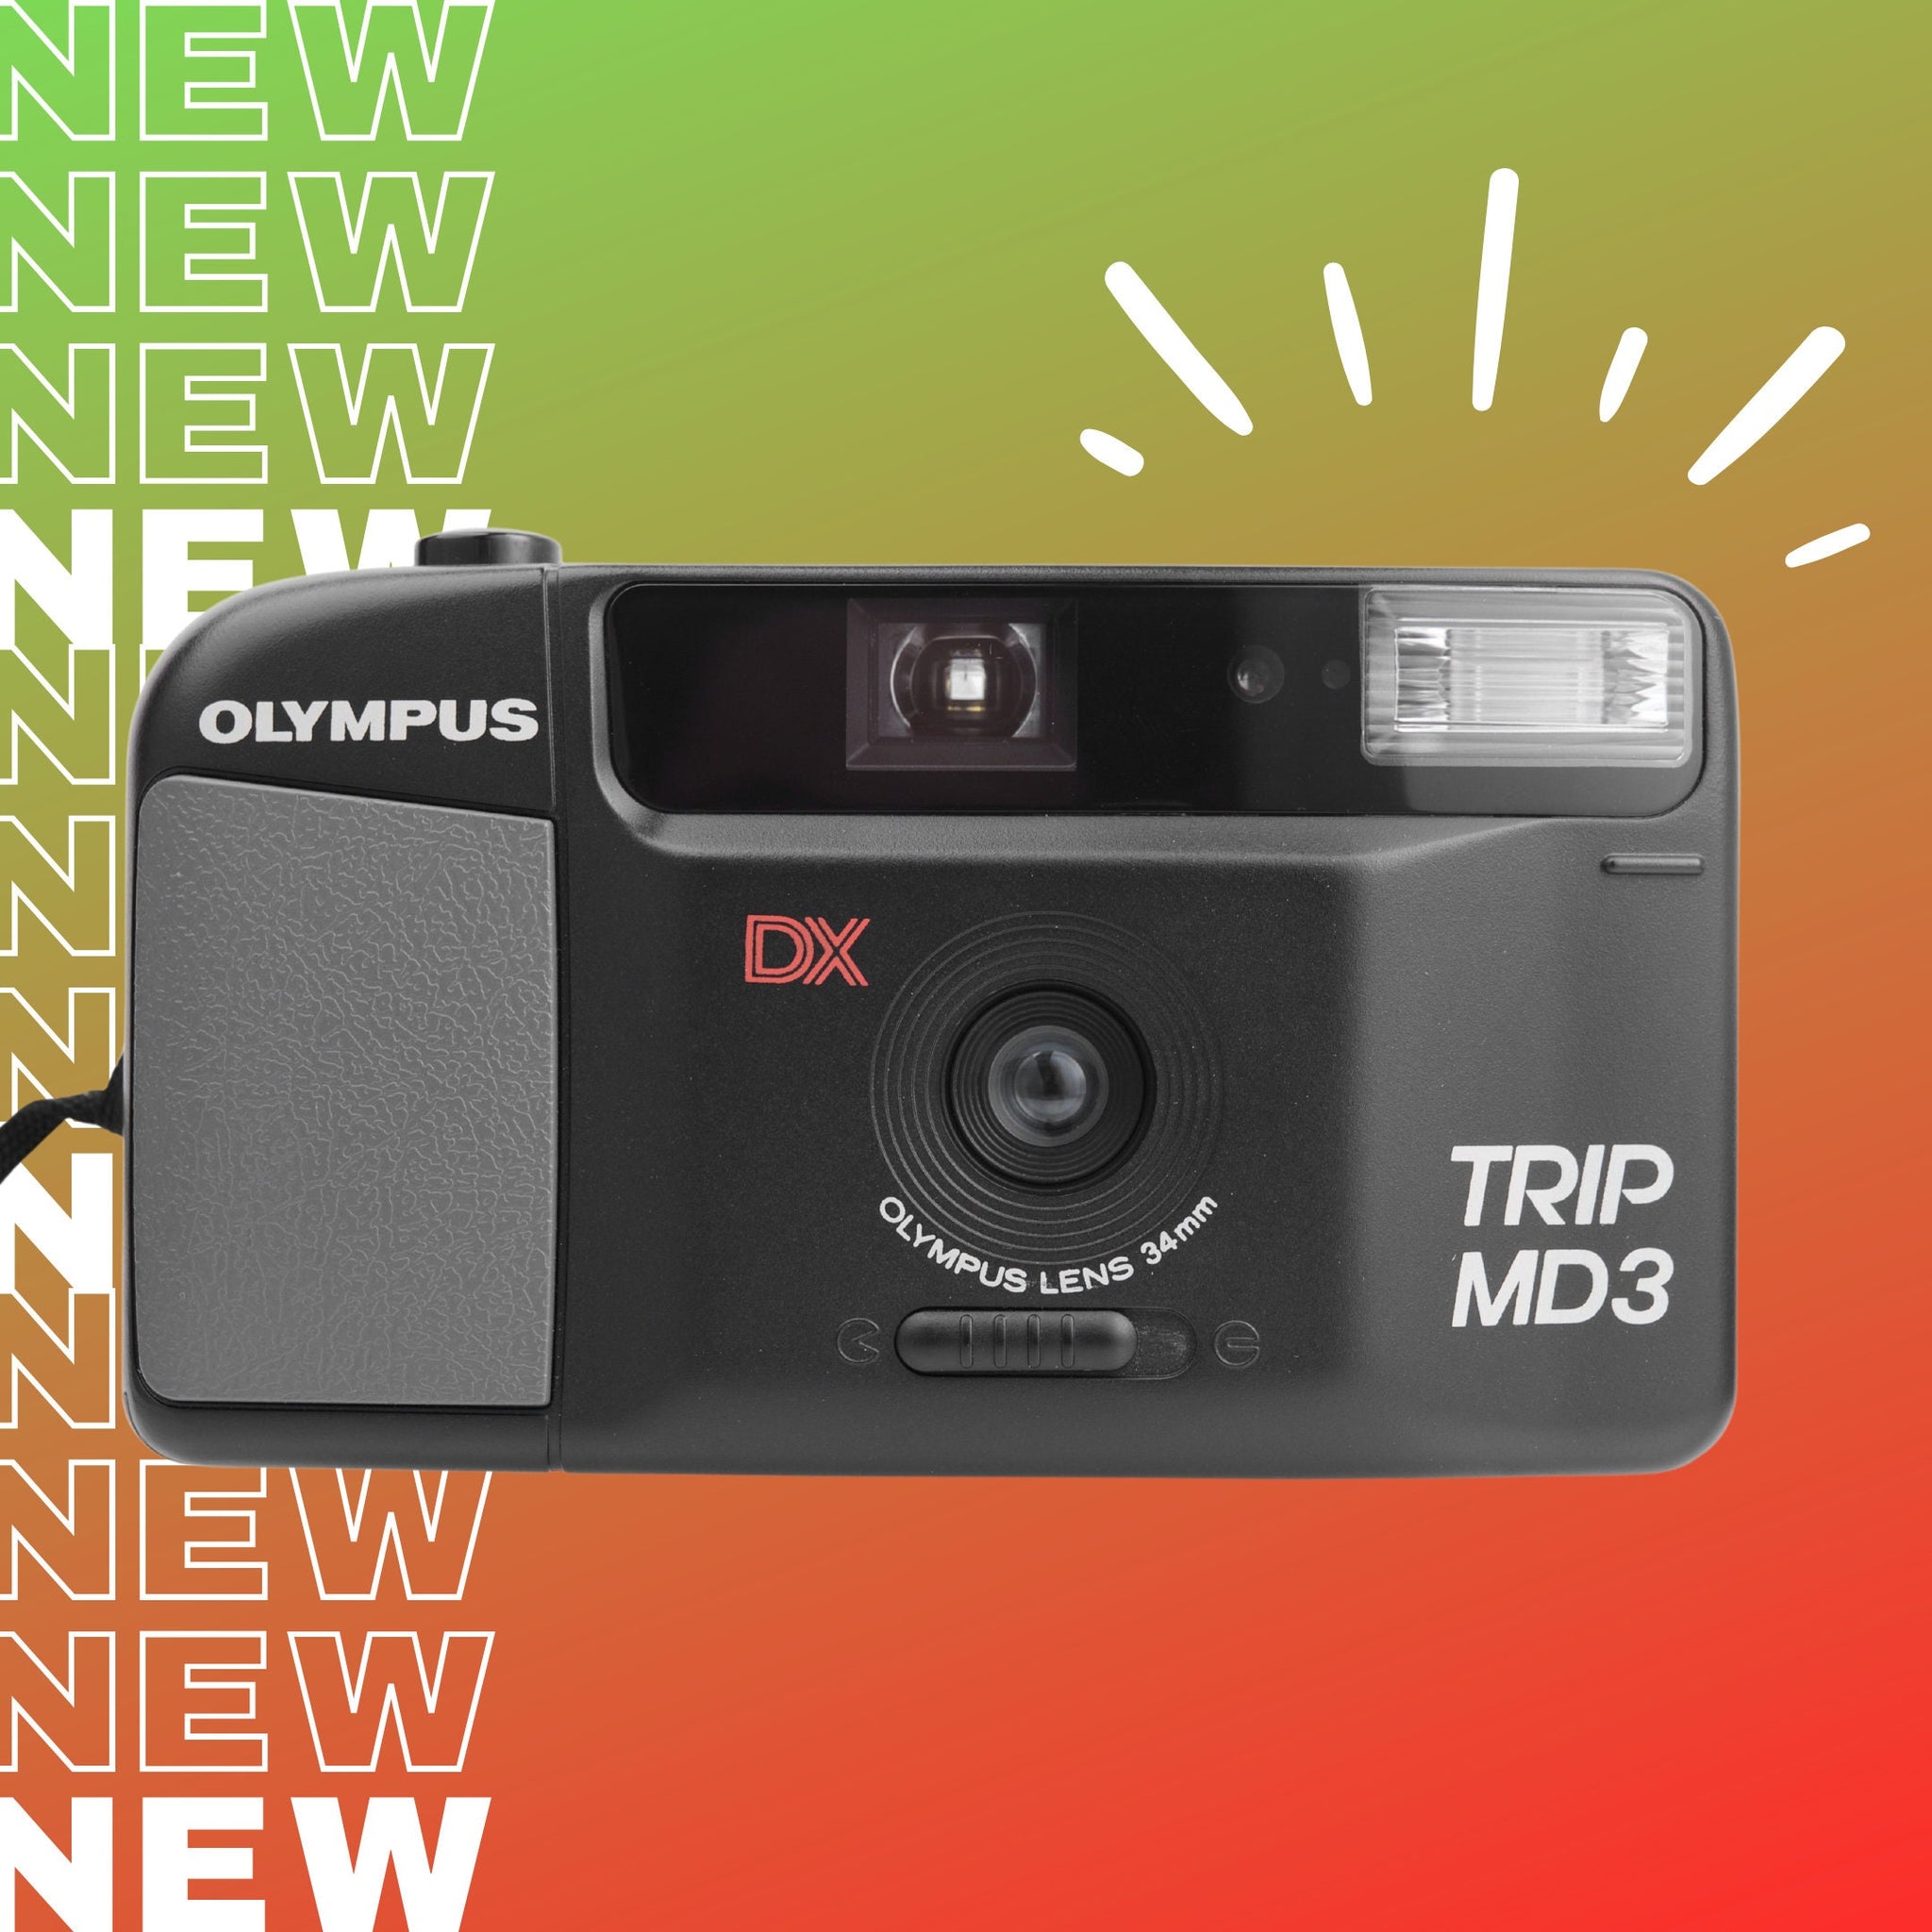 Working Film Camera, Olympus DX TRIP MD3 camera, Olympus Film Camera